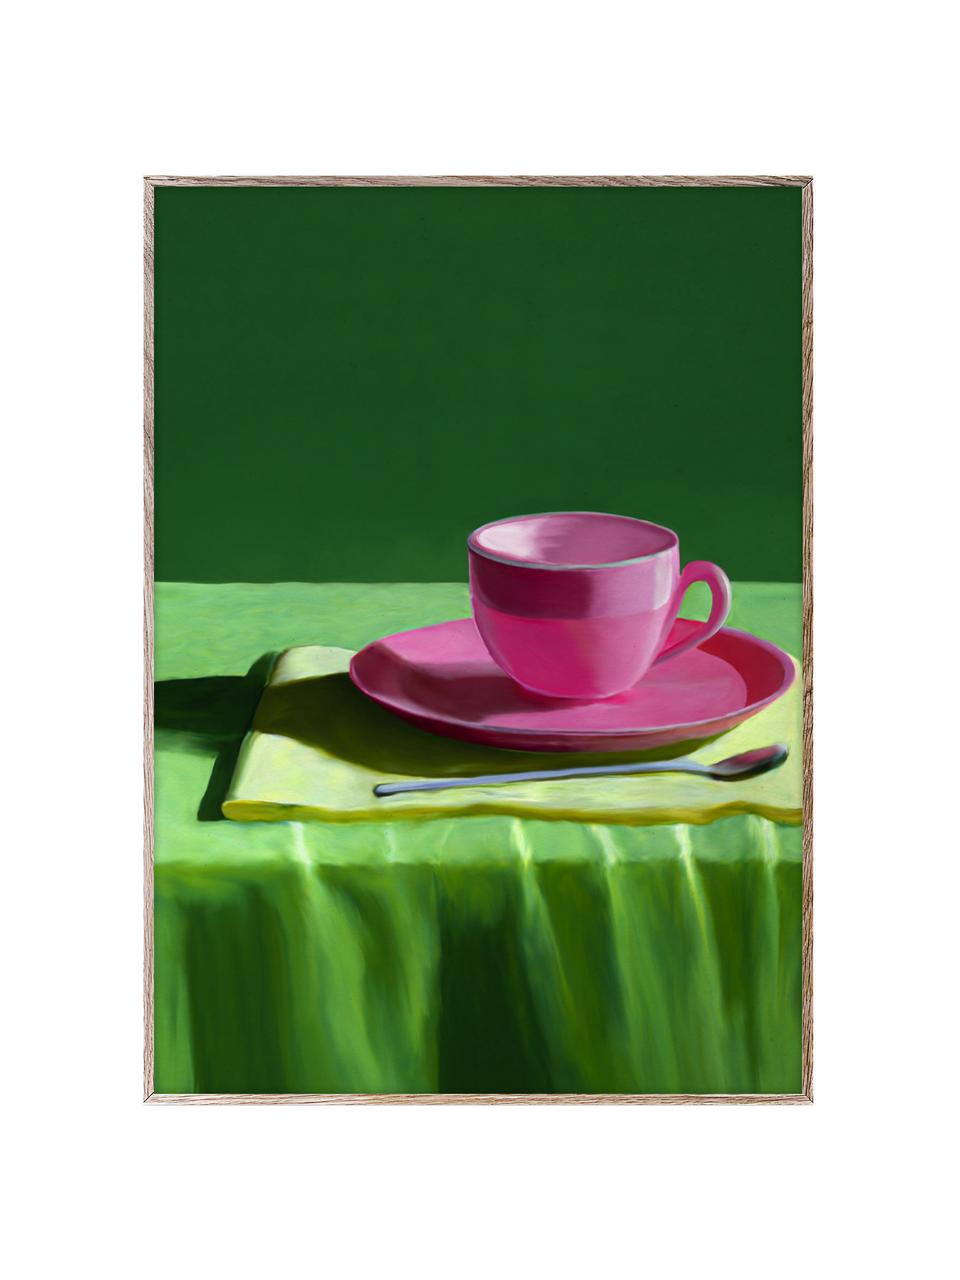 Poster Still Here, 210 g de papier mat de la marque Hahnemühle, impression numérique avec 10 couleurs résistantes aux UV, Tons verts, rose bonbon, larg. 30 x haut. 40 cm